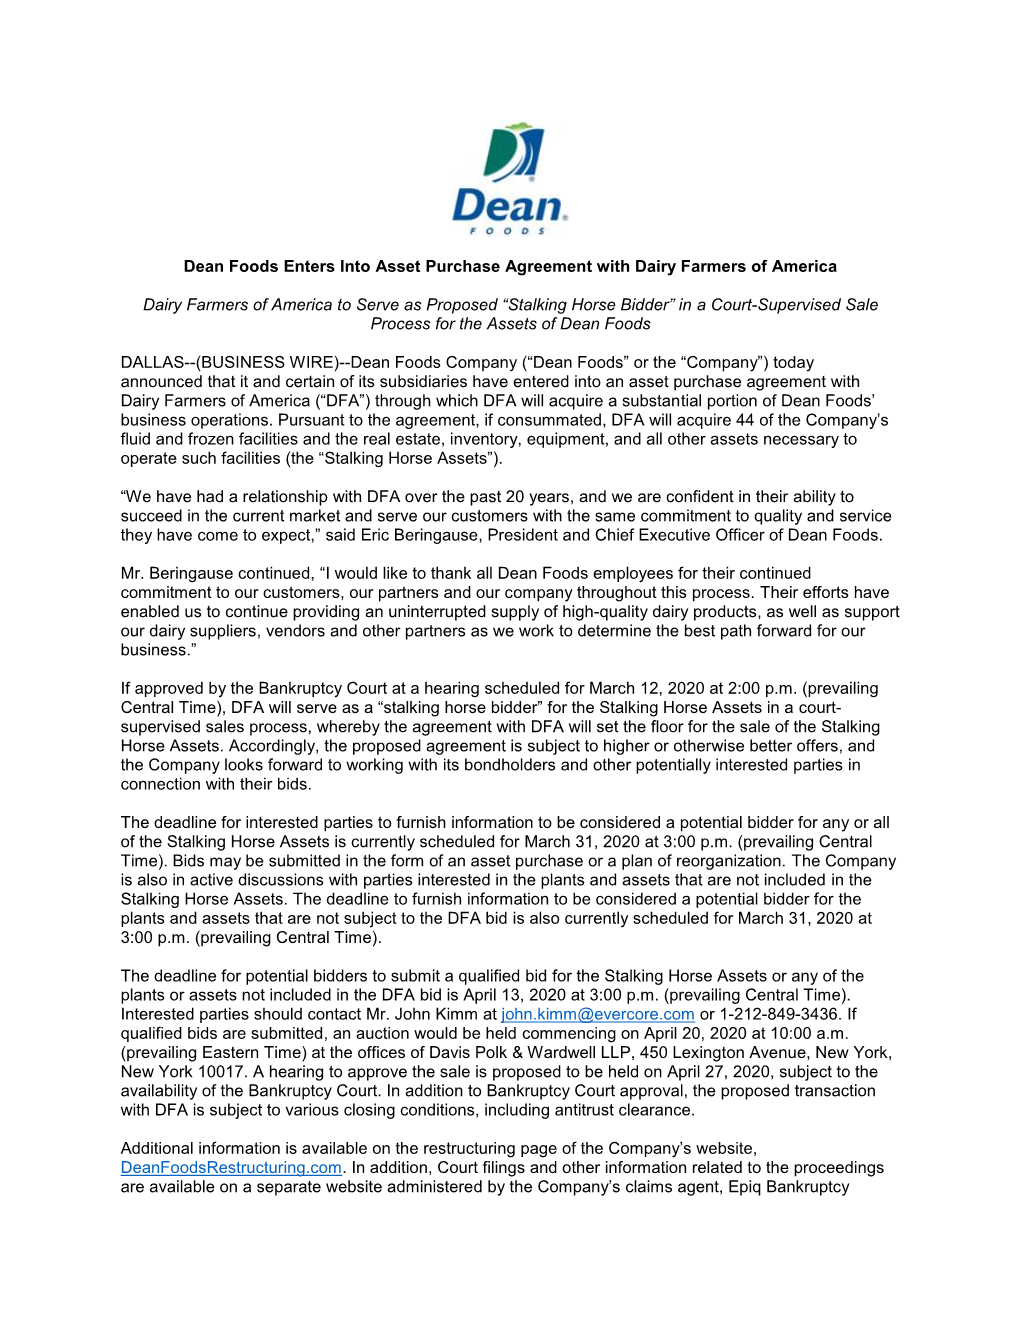 DRAFT DF-DFA APA Press Release